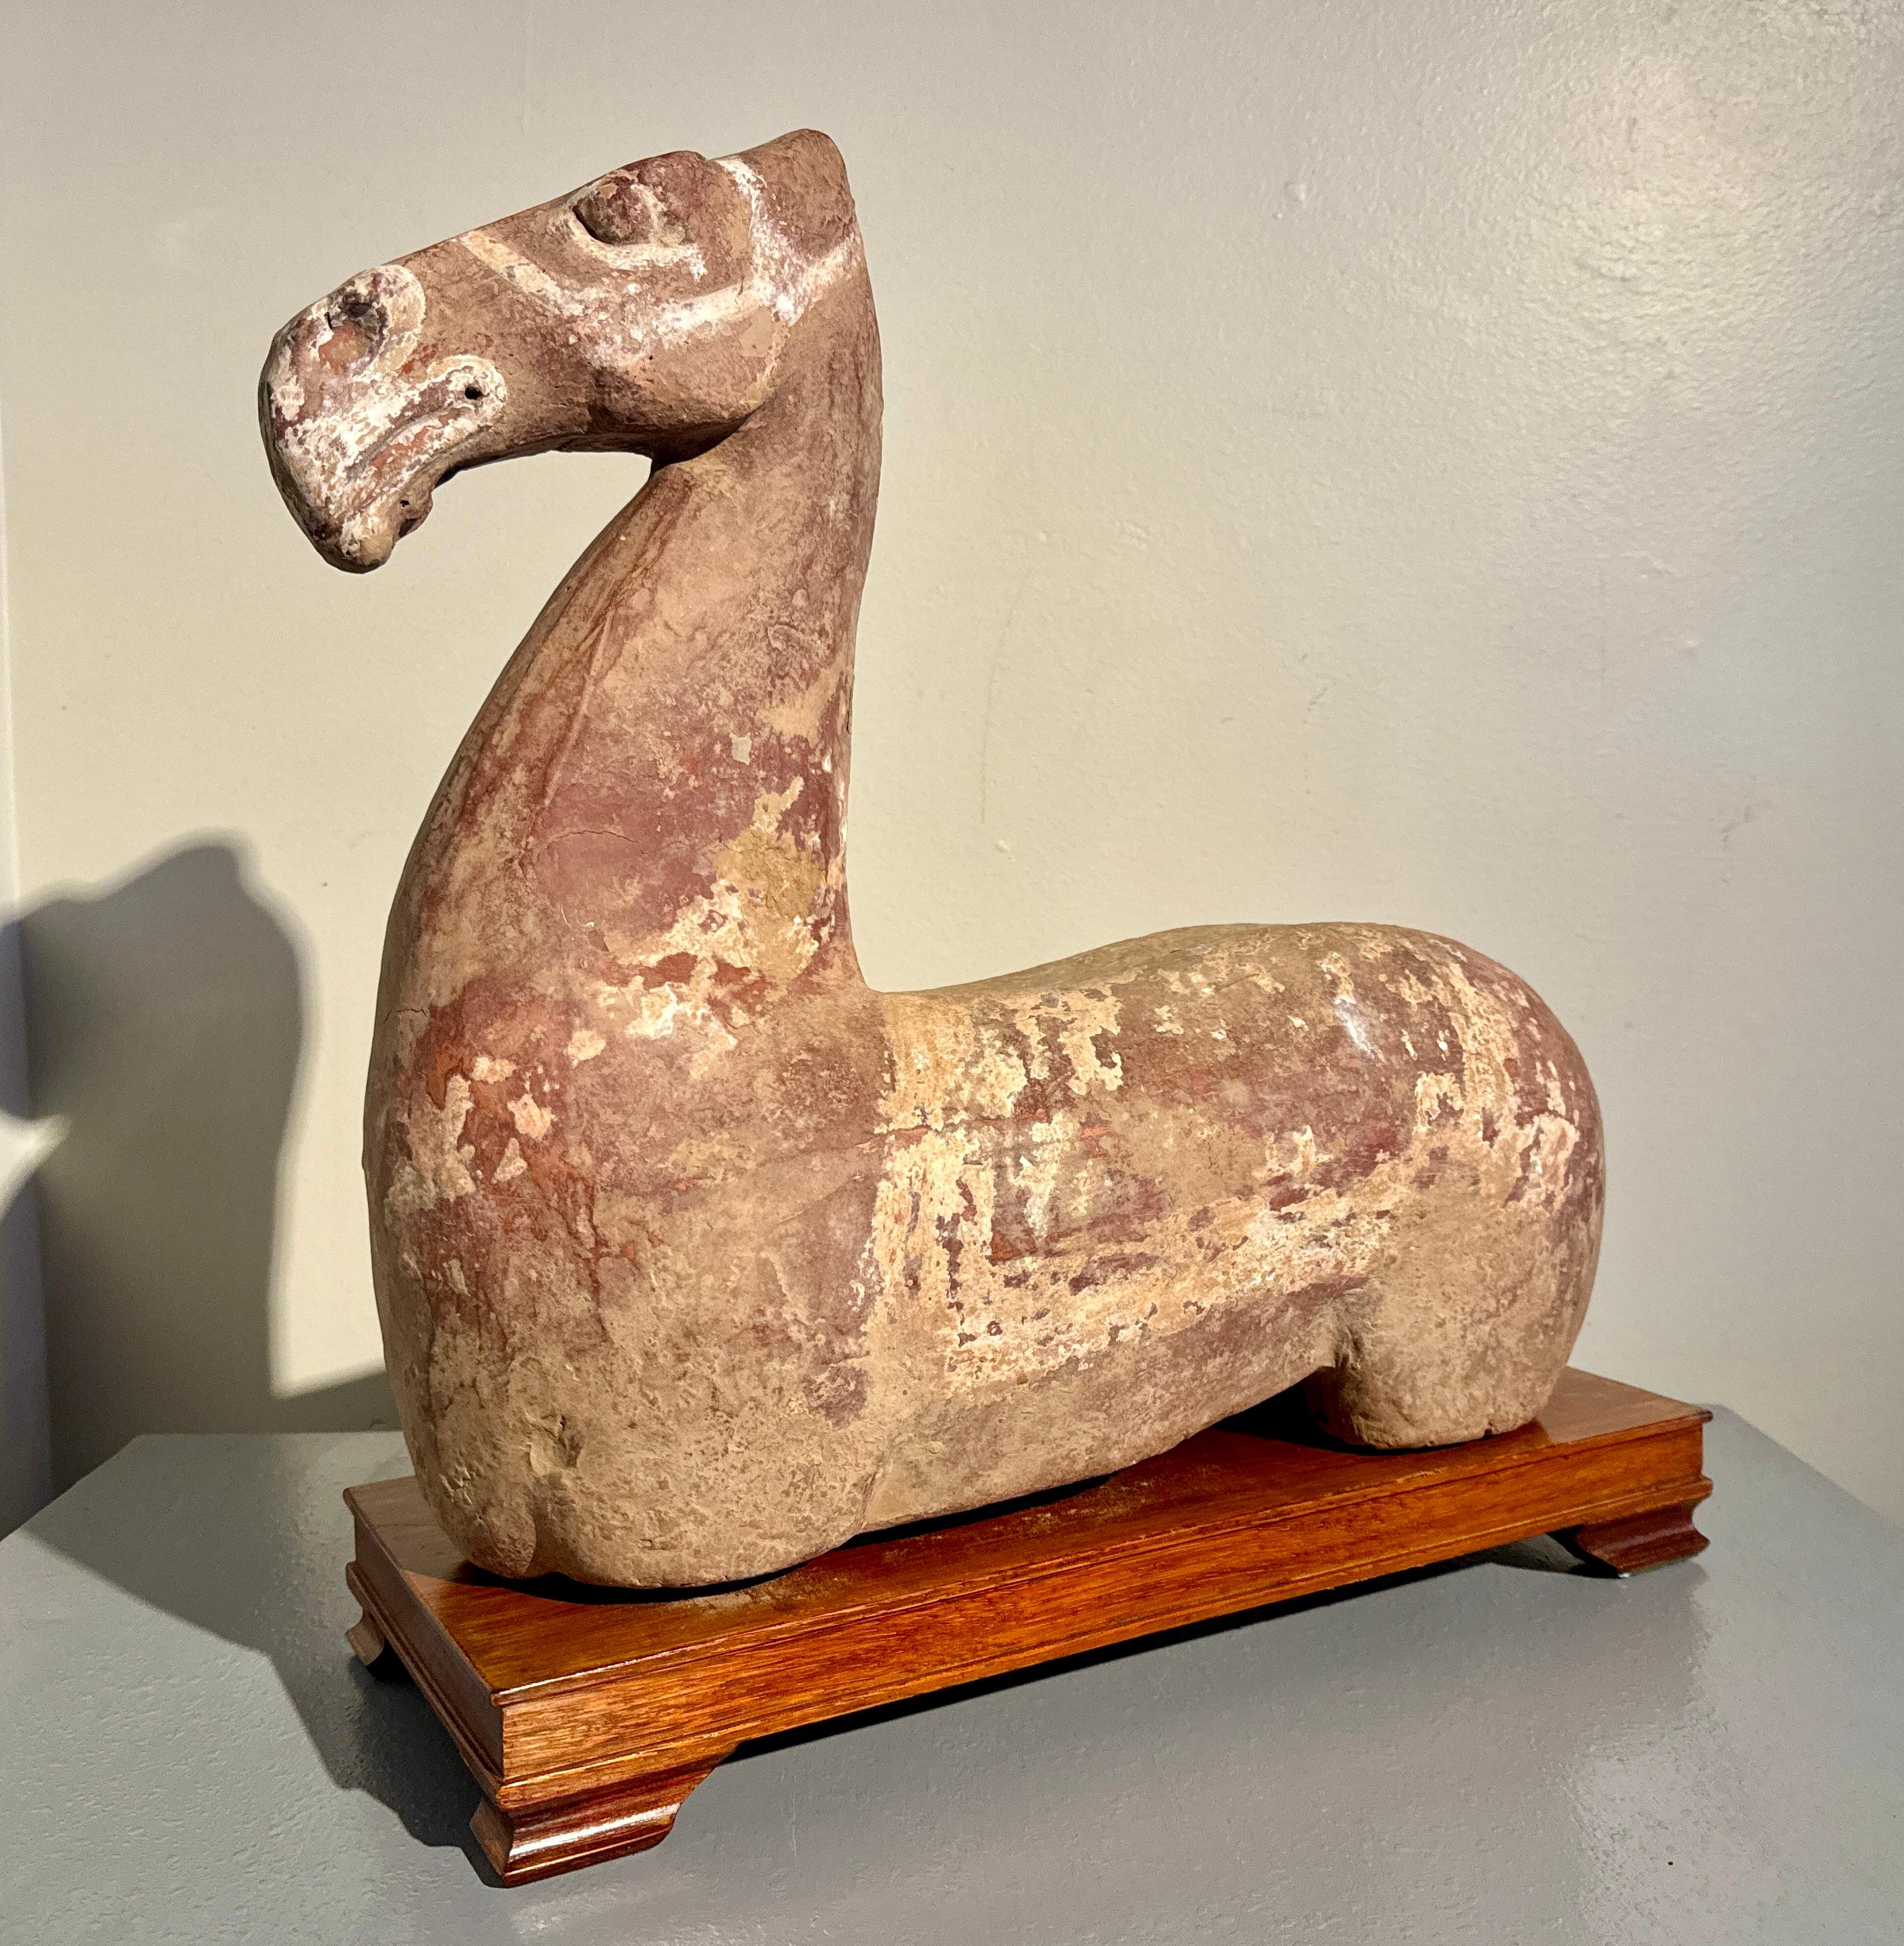 Grande figurine chinoise en poterie peinte représentant un torse de cheval, dynastie Han (206 av. J.-C. à 220 apr. J.-C.).

Torse de cheval chinois de la dynastie Han, parfois appelé cheval couché, d'une taille inhabituelle, en poterie rouge cuite,